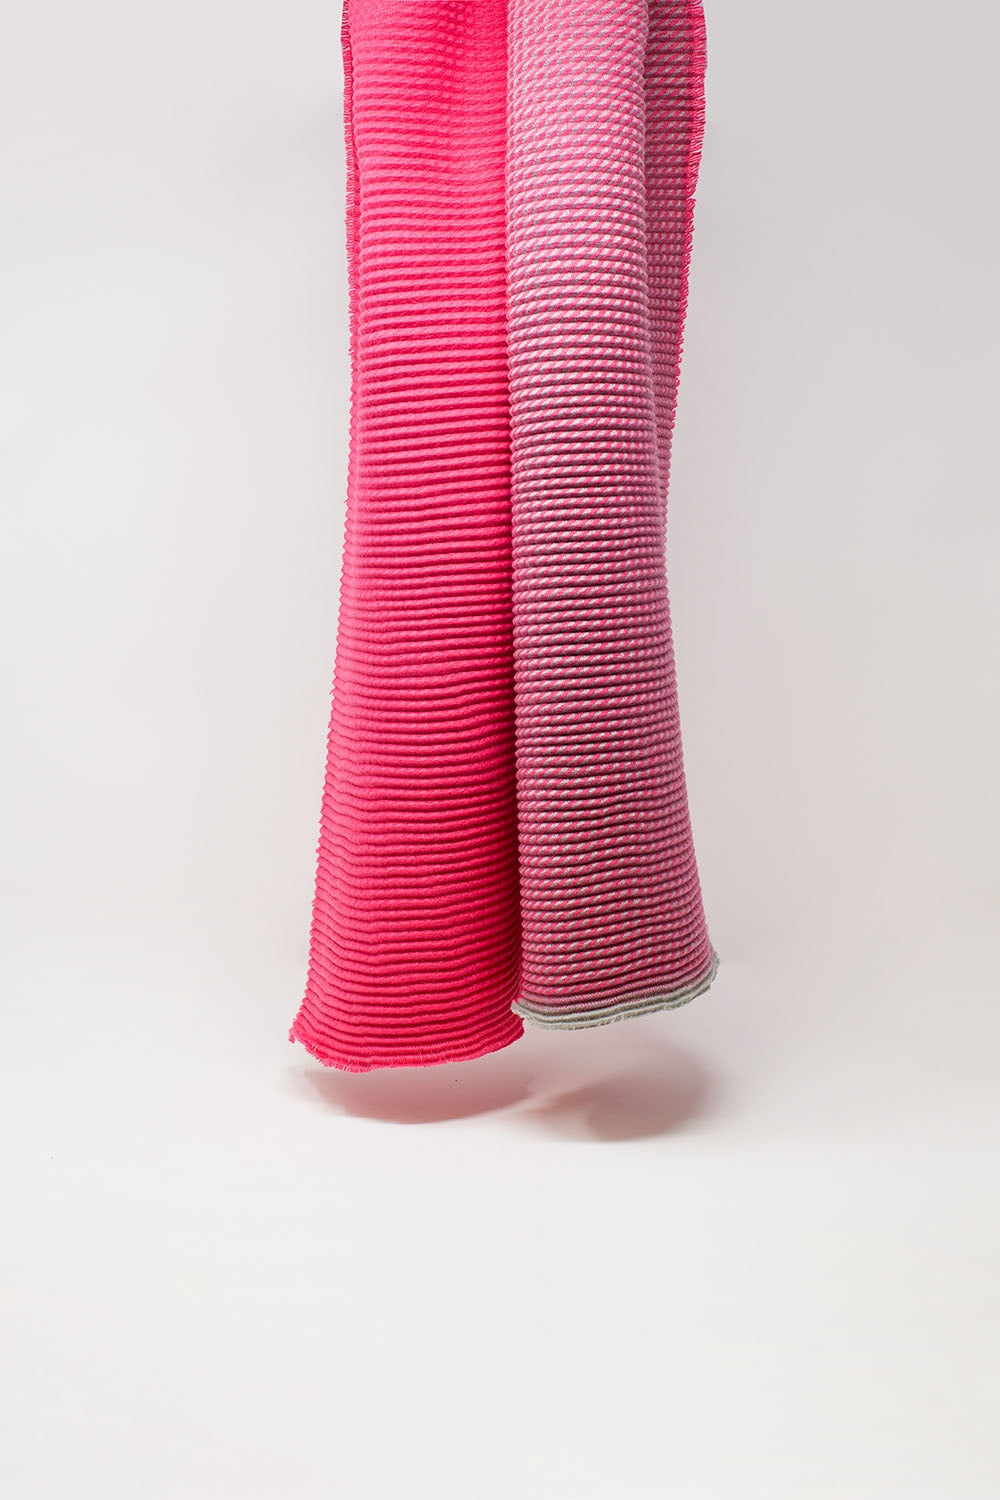 Dunne sjaal met gemengde breisels in roze tinten